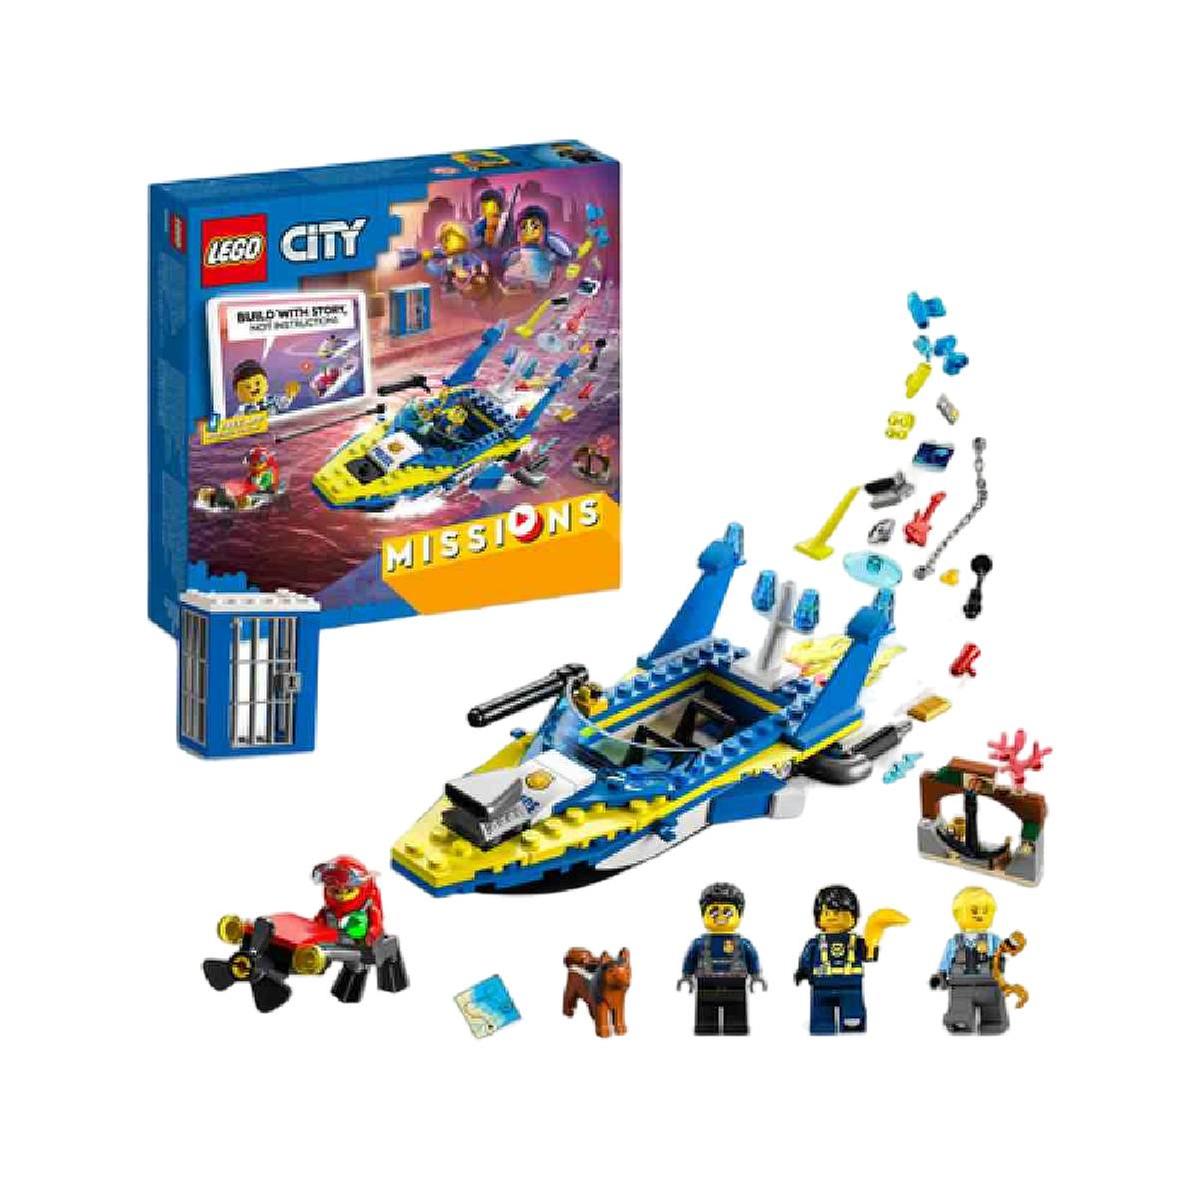 LEGO City - Missions: Investigação policial Aquática - 60355 | LEGO CITY |  Loja de brinquedos e videojogos Online Toysrus